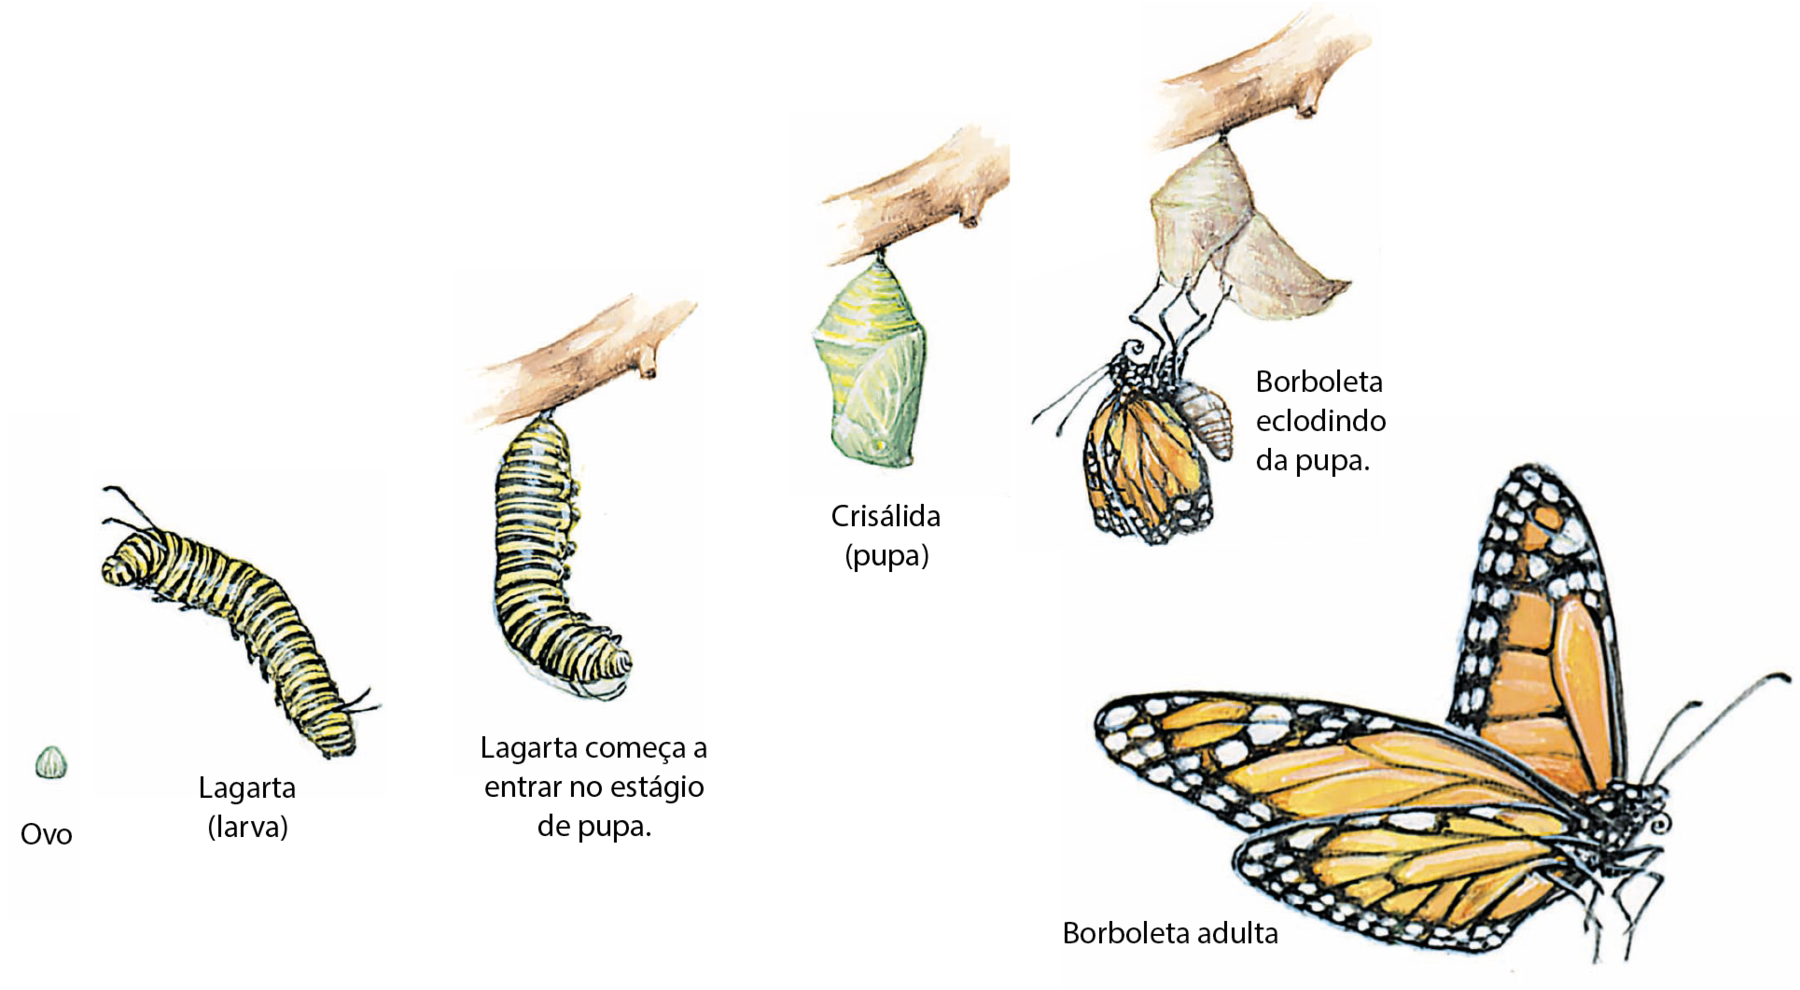 Esquema. Sequência de imagens da metamorfose completa da borboleta. Ovo: estrutura esférica esbranquiçada. Lagarta (larva) alongada, segmentada, com pernas na região ventral do corpo. Lagarta começa a entrar no estágio de pupa: lagarta presa em um galho, começando a se curvar. Crisálida (pupa): um casulo pendurado em um galho. Borboleta eclodindo da pupa: borboleta com as asas amassadas, laranja e preta, saindo do casulo. Borboleta adulta: borboleta laranja, amarela e preta com as asas abertas, antenas finas e estrutura bucal fina dobrada formando uma espiral na frente da cabeça.